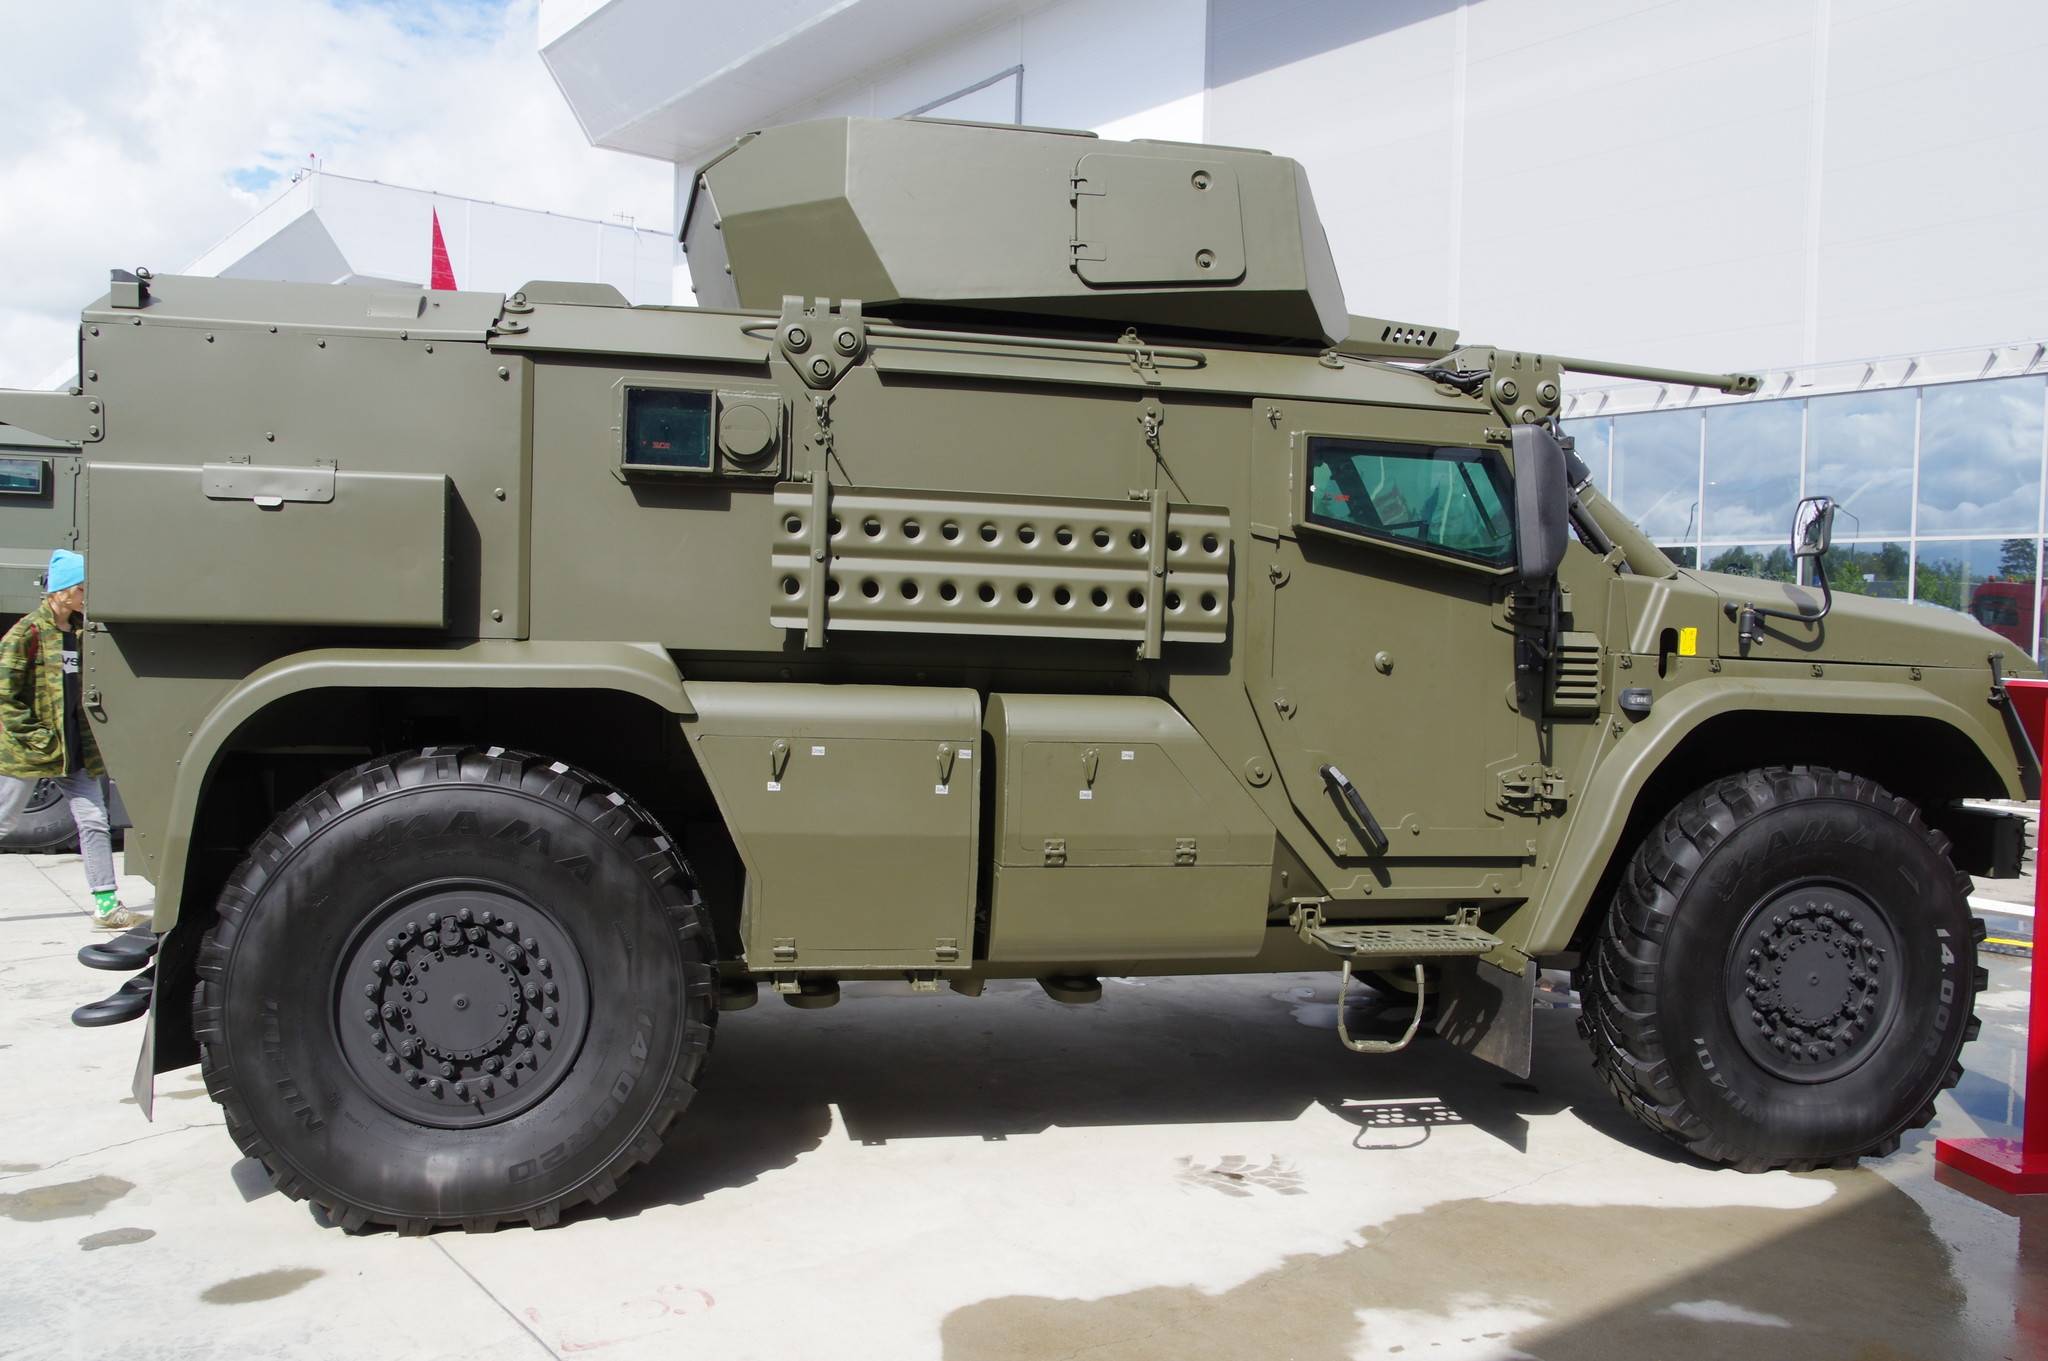 Российский бронеавтомобиль т-98 «комбат»: история создания, особенности конструкции, технические характеристики